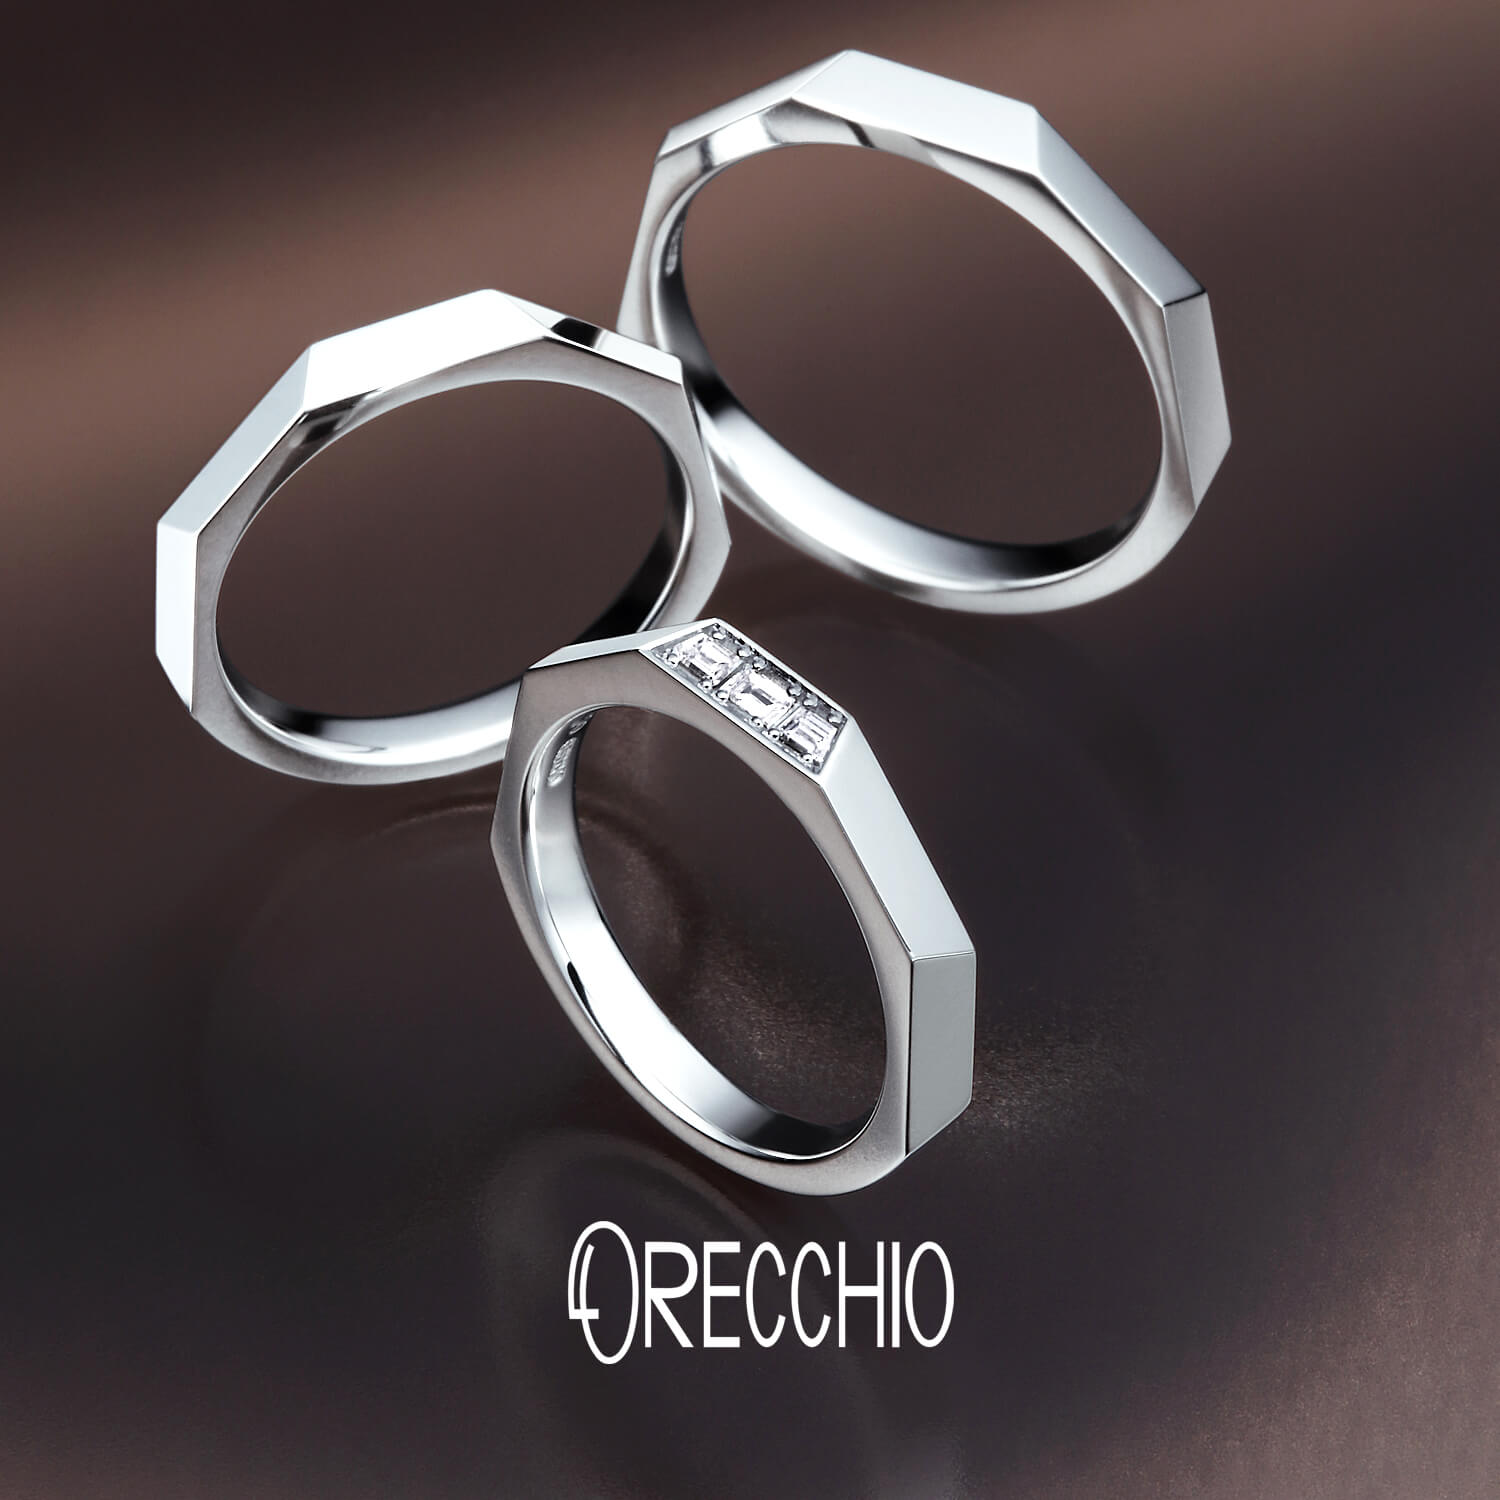 ORECCHIOオレッキオの結婚指輪safariサファリFM-2229とFM-2227とFM-2228